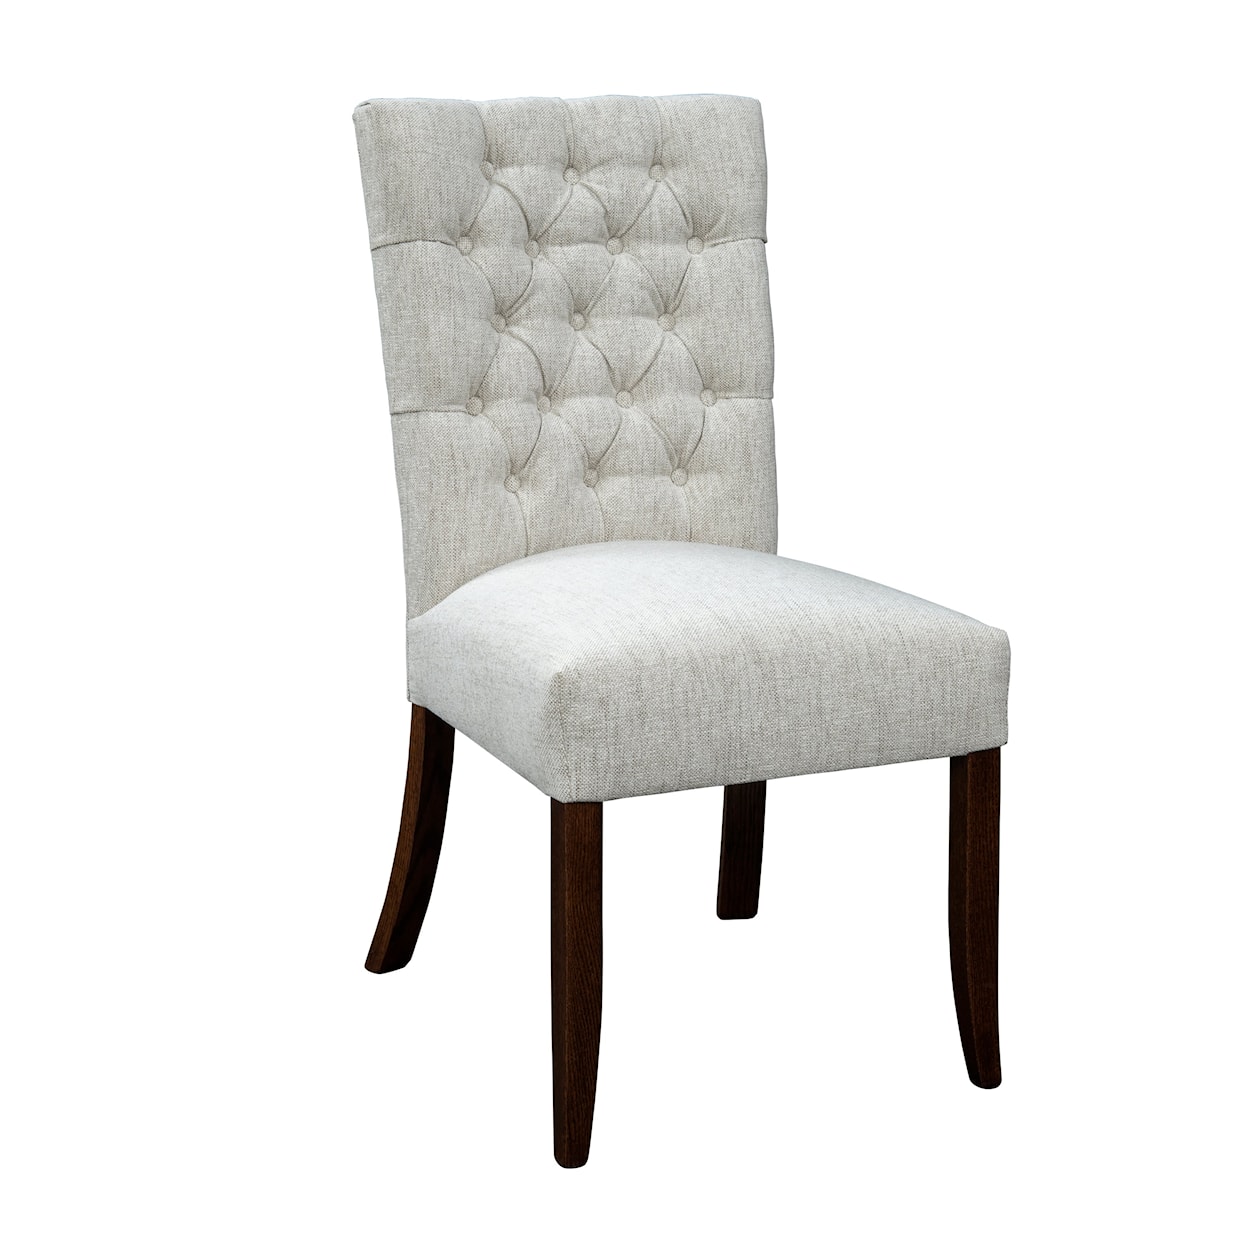 Urban Barnwood Furniture Davinci Davinci Side Chair